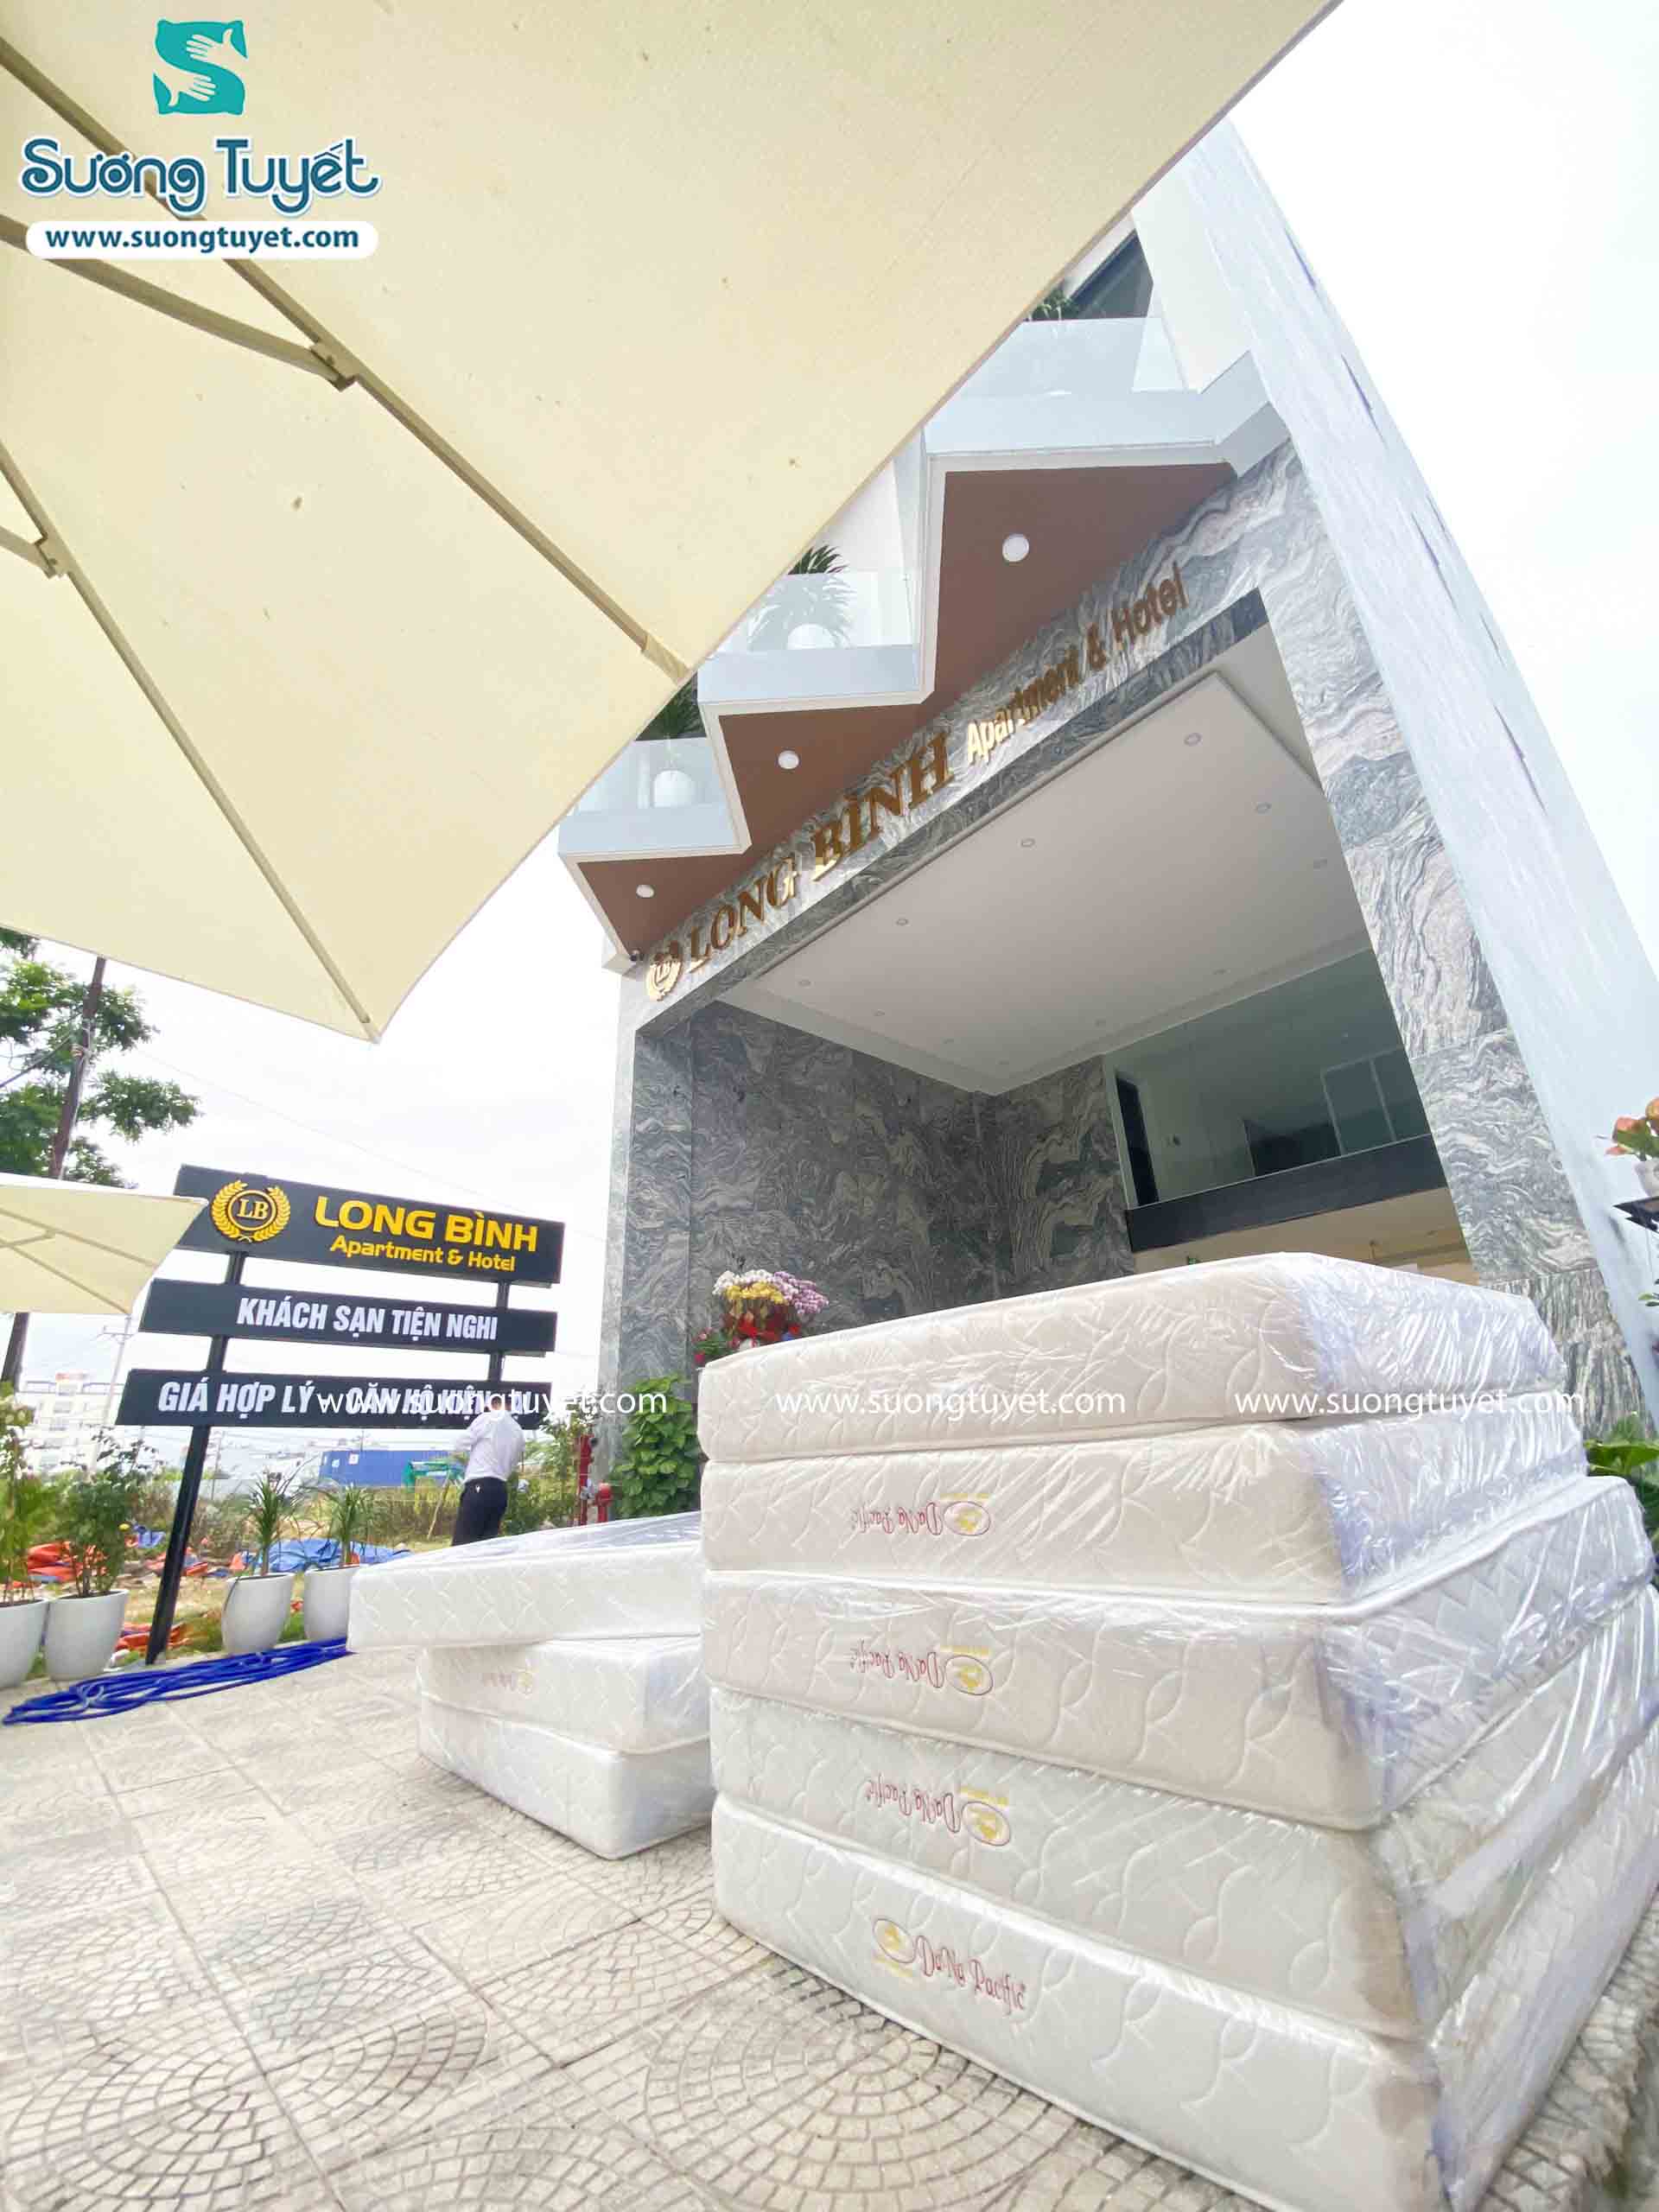 Hình ảnh Sương Tuyết cung cấp chăn ga gối nệm cho Long Bình hotel